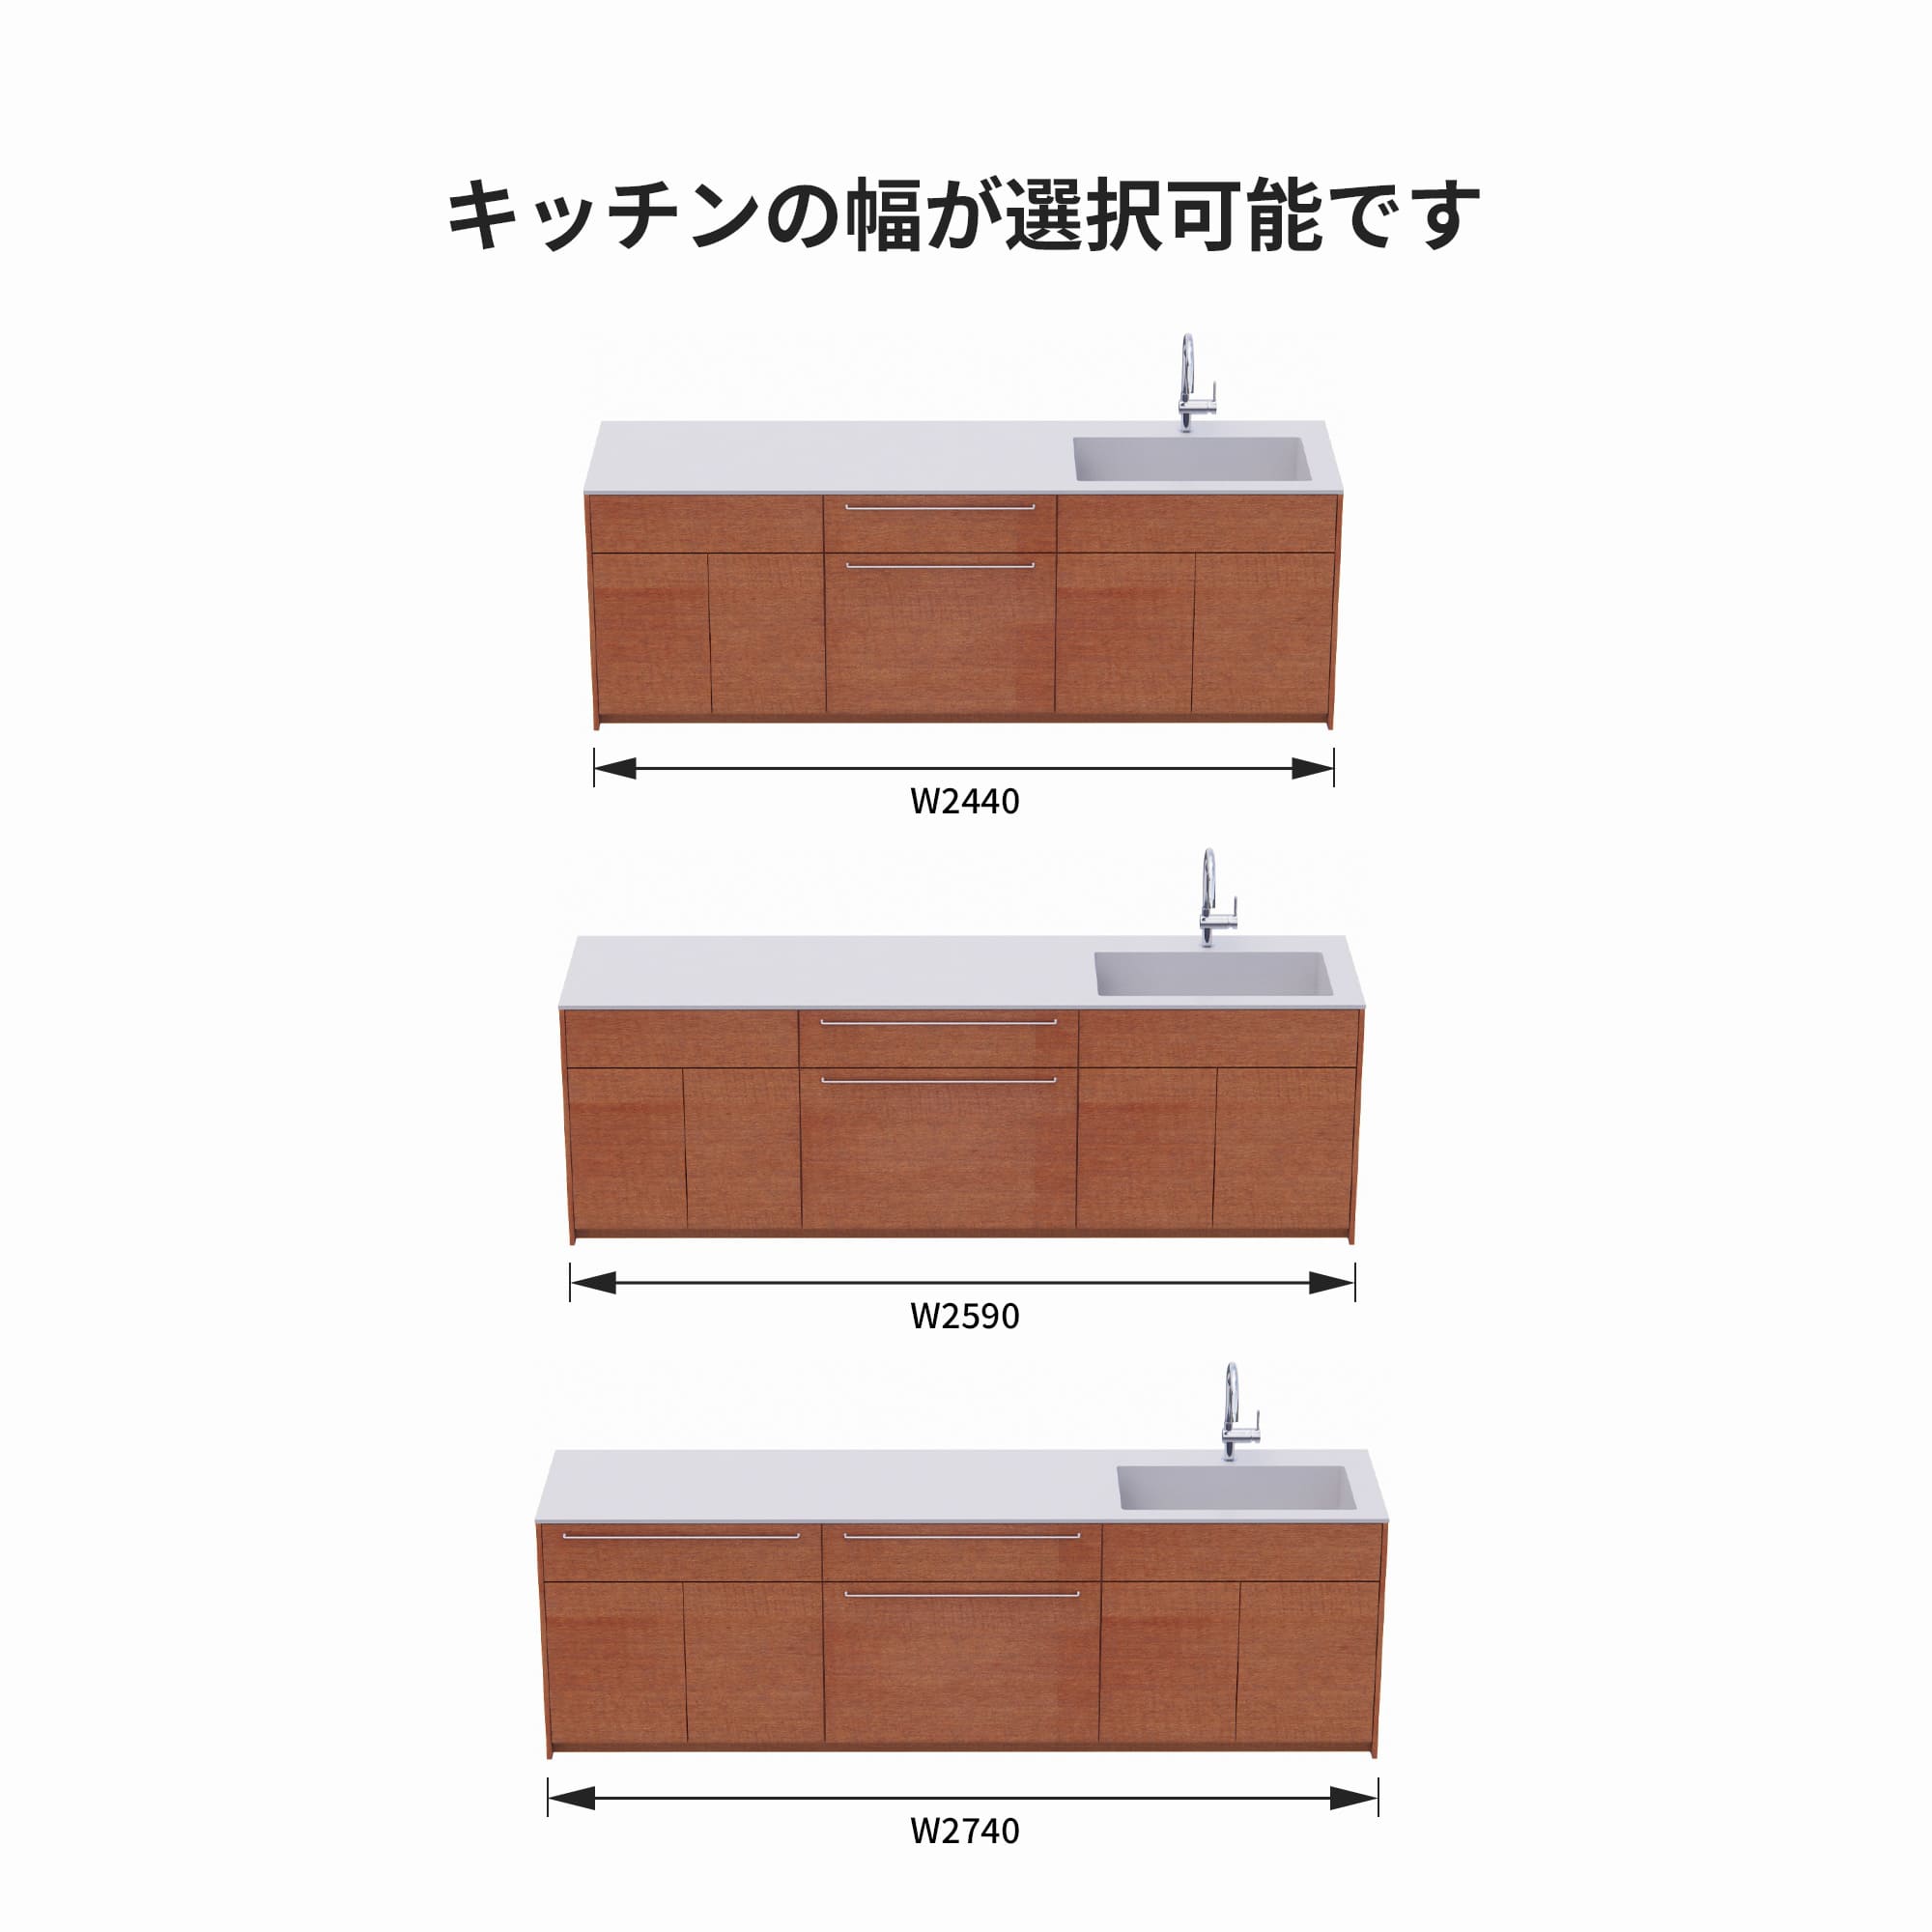 木製システムキッチン 対面型 W2440～2740・コンロなし / オーブンなし / 食洗機なし KB-KC022-42-G183